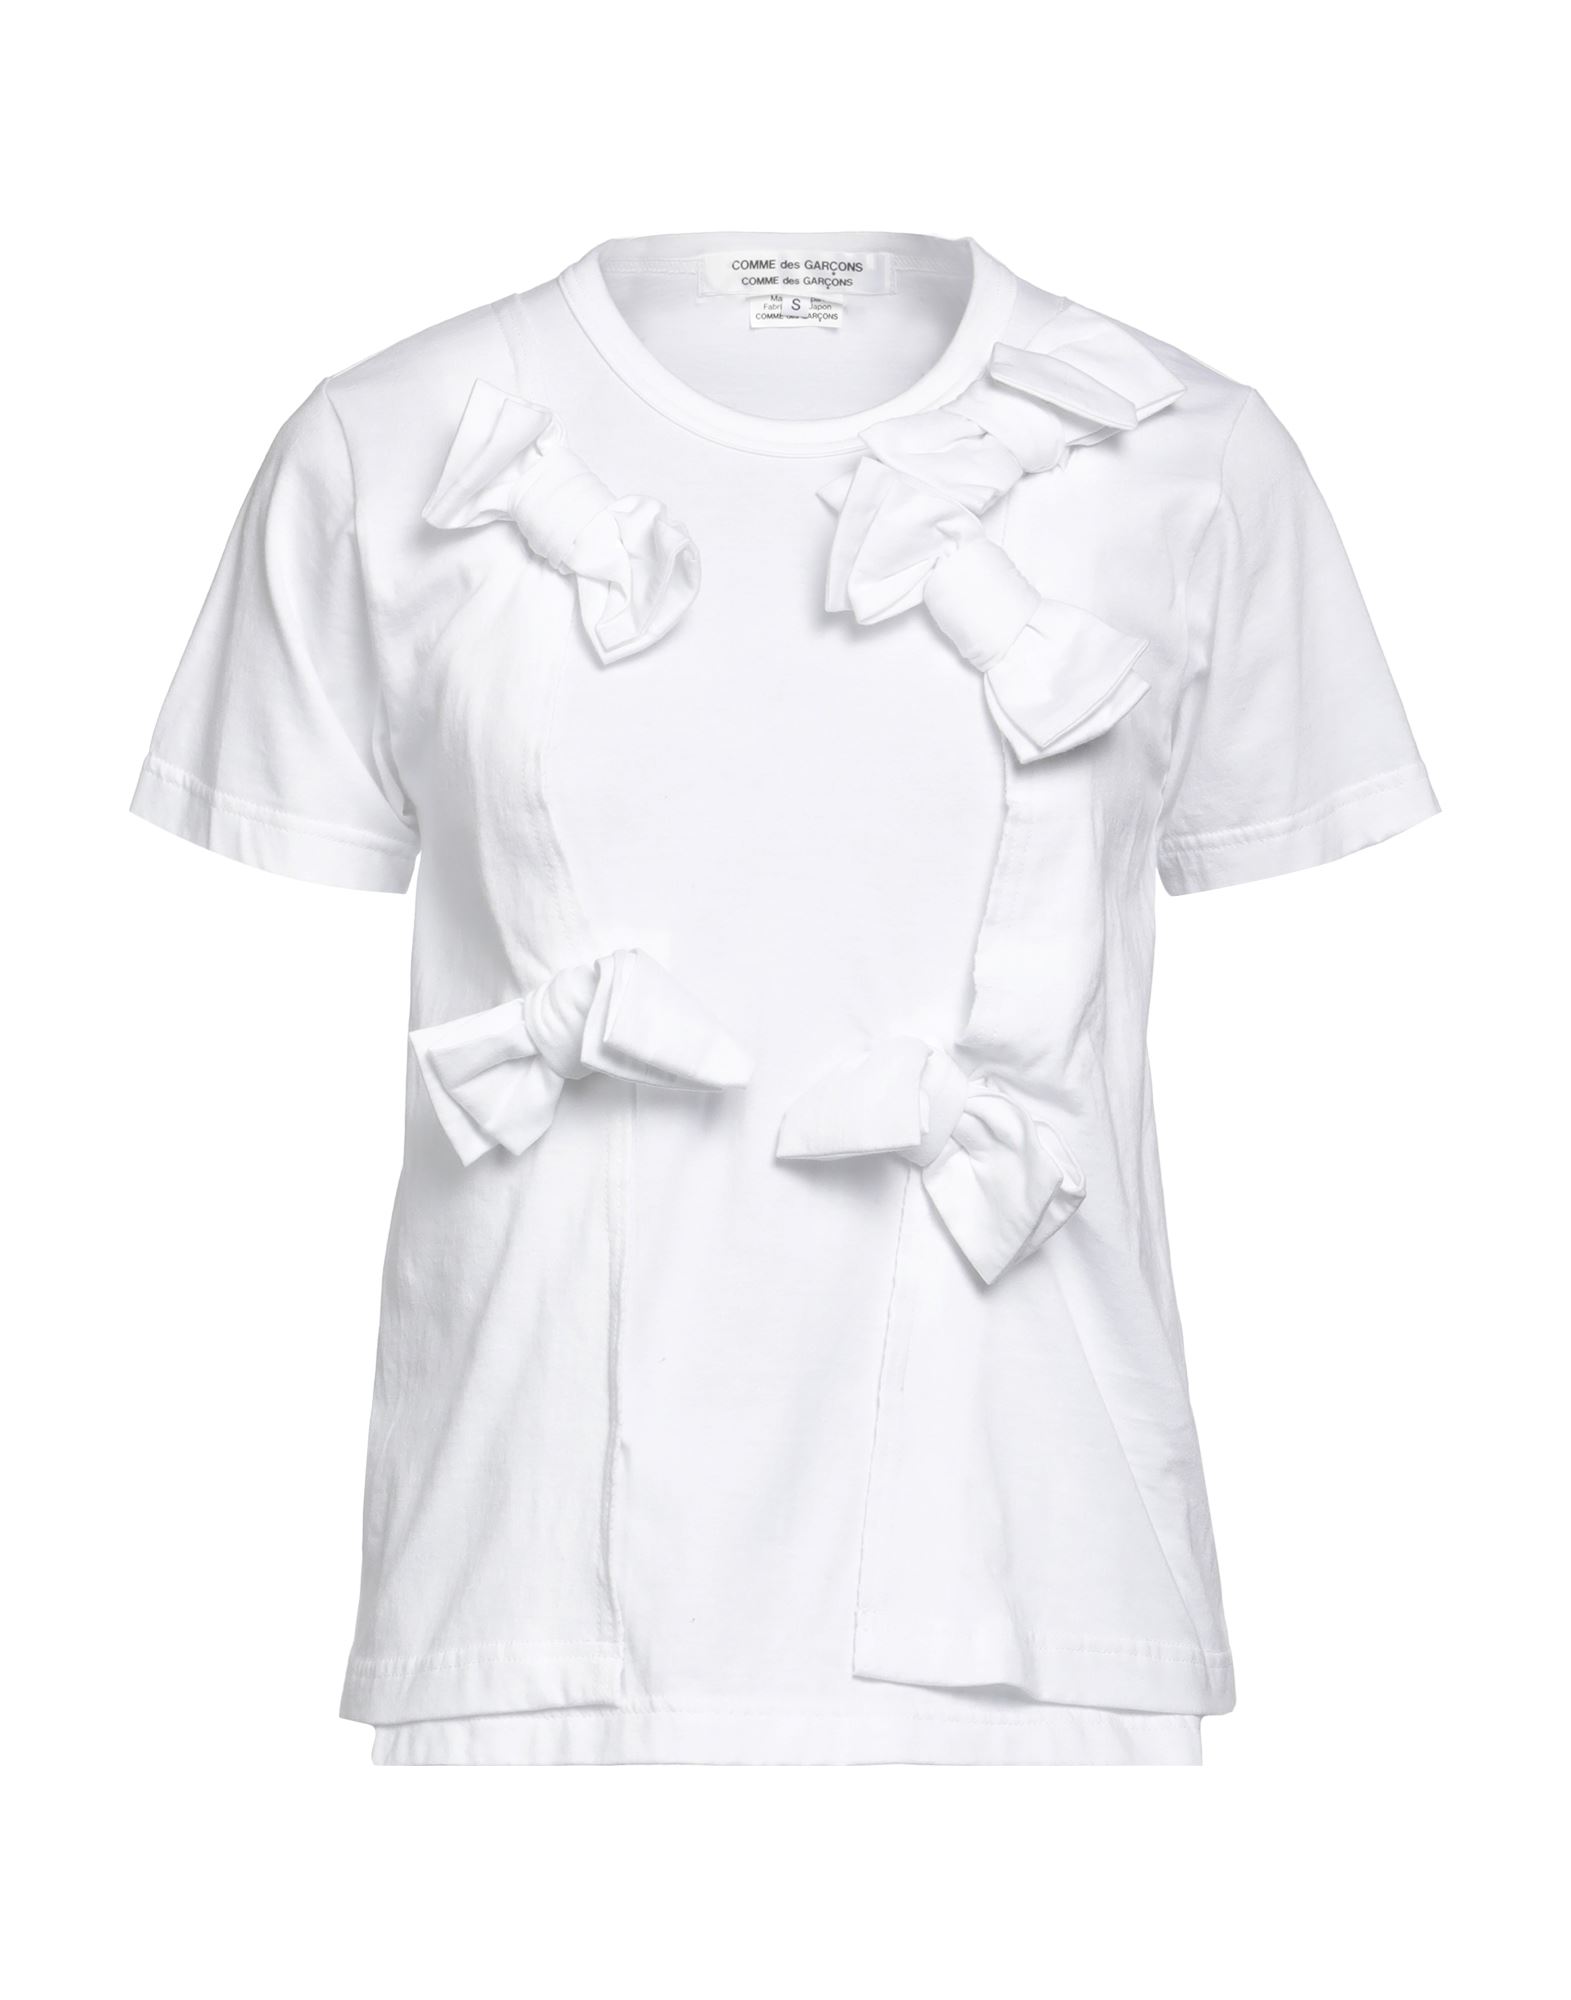 Comme Des Garçons Woman T-shirt White Size S Cotton